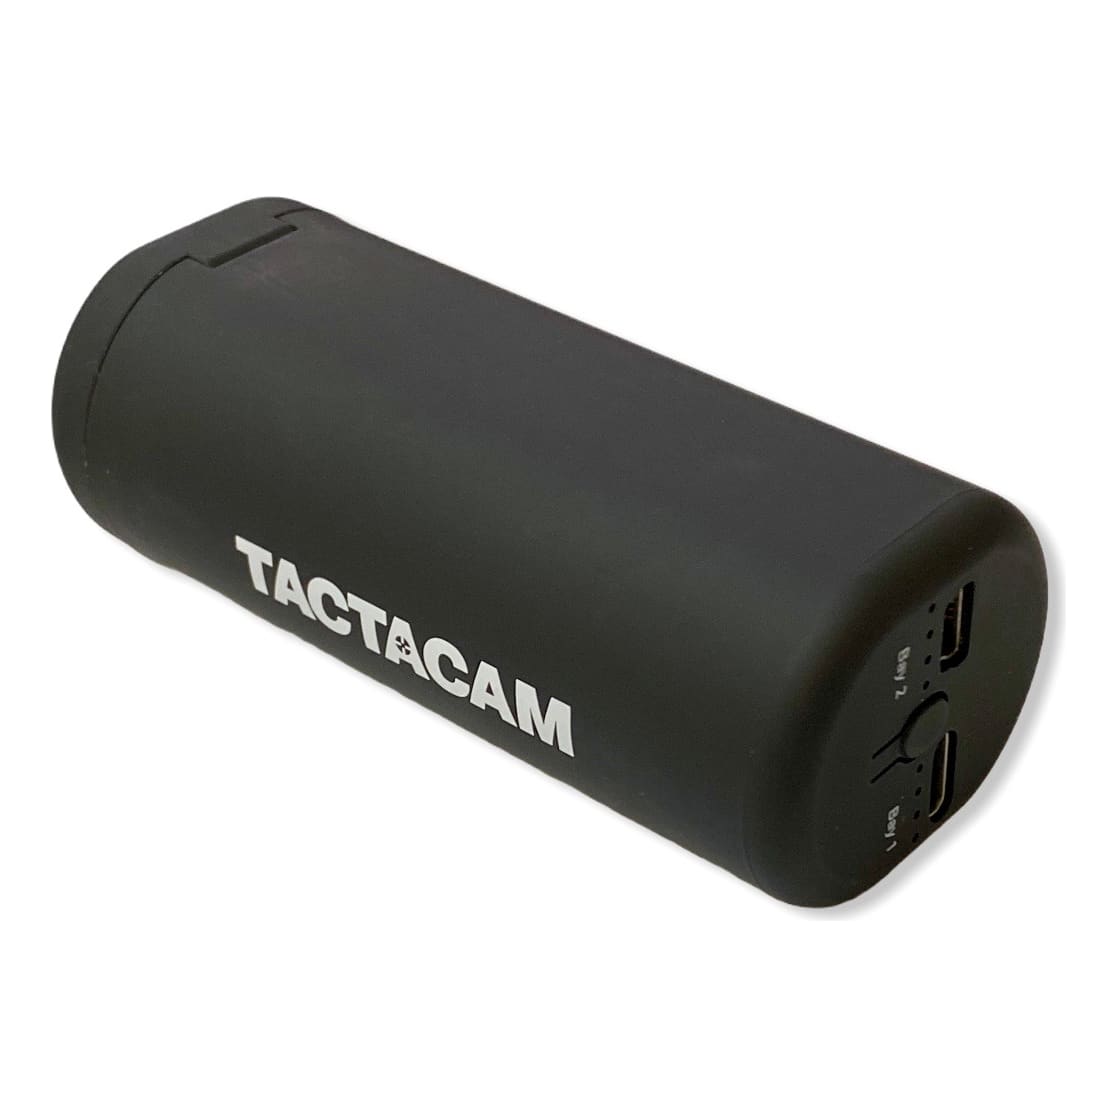 Tactacam™ External Battery Charger